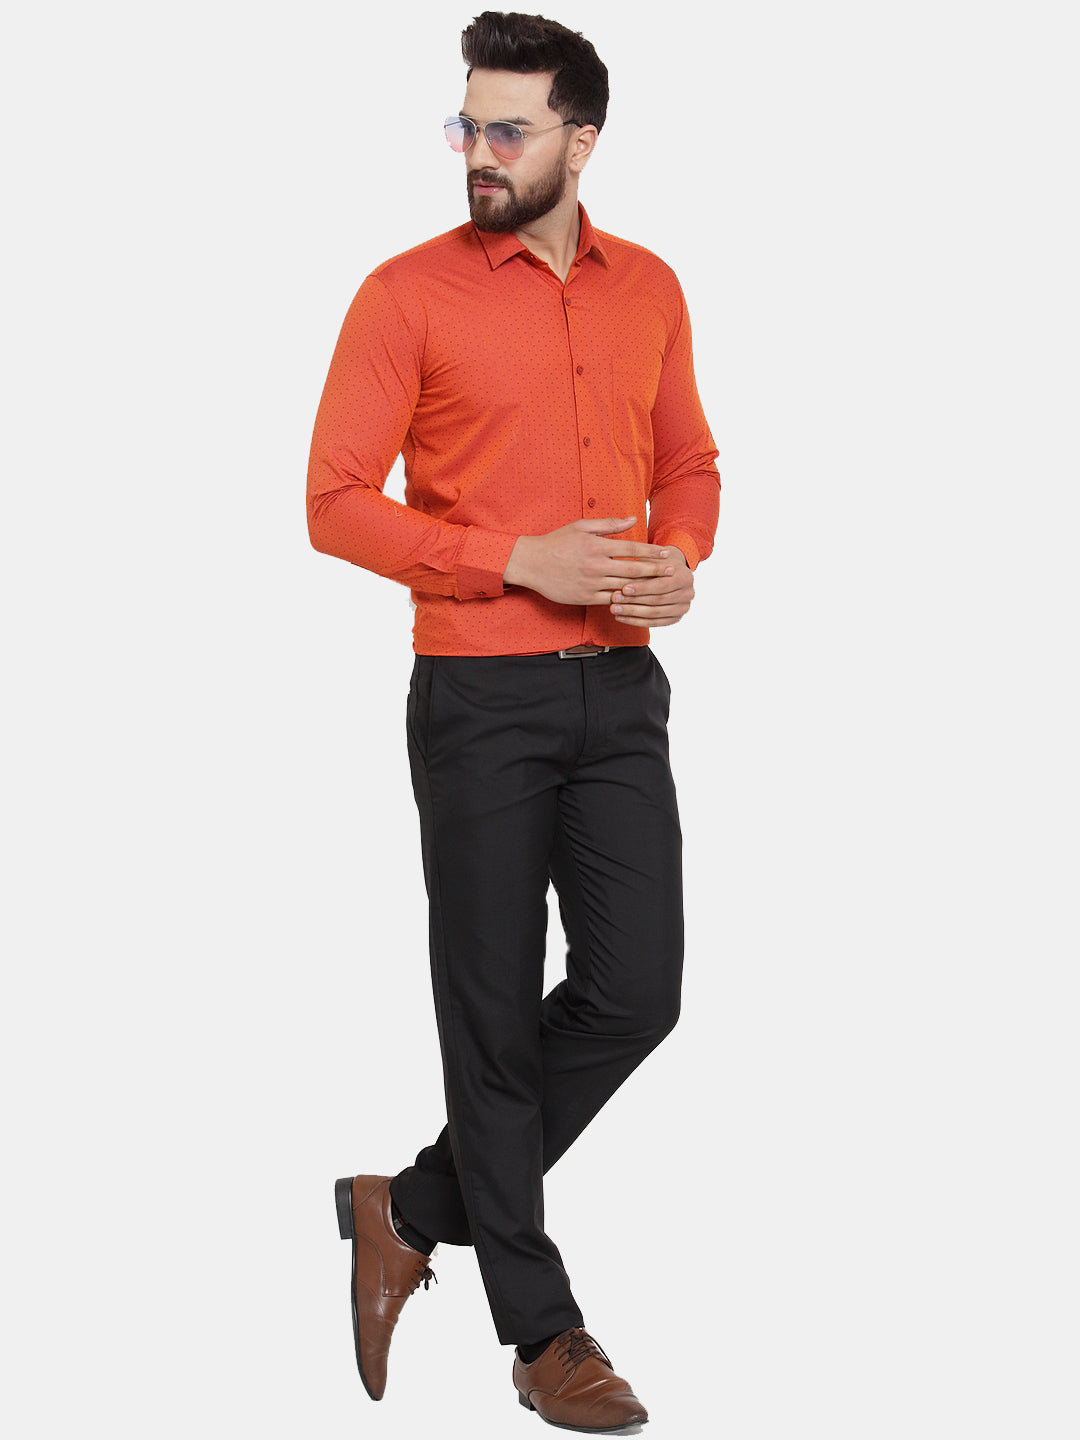 Men's Orange Cotton Polka Dots Formal Shirts ( SF 739Orange ) - Jainish